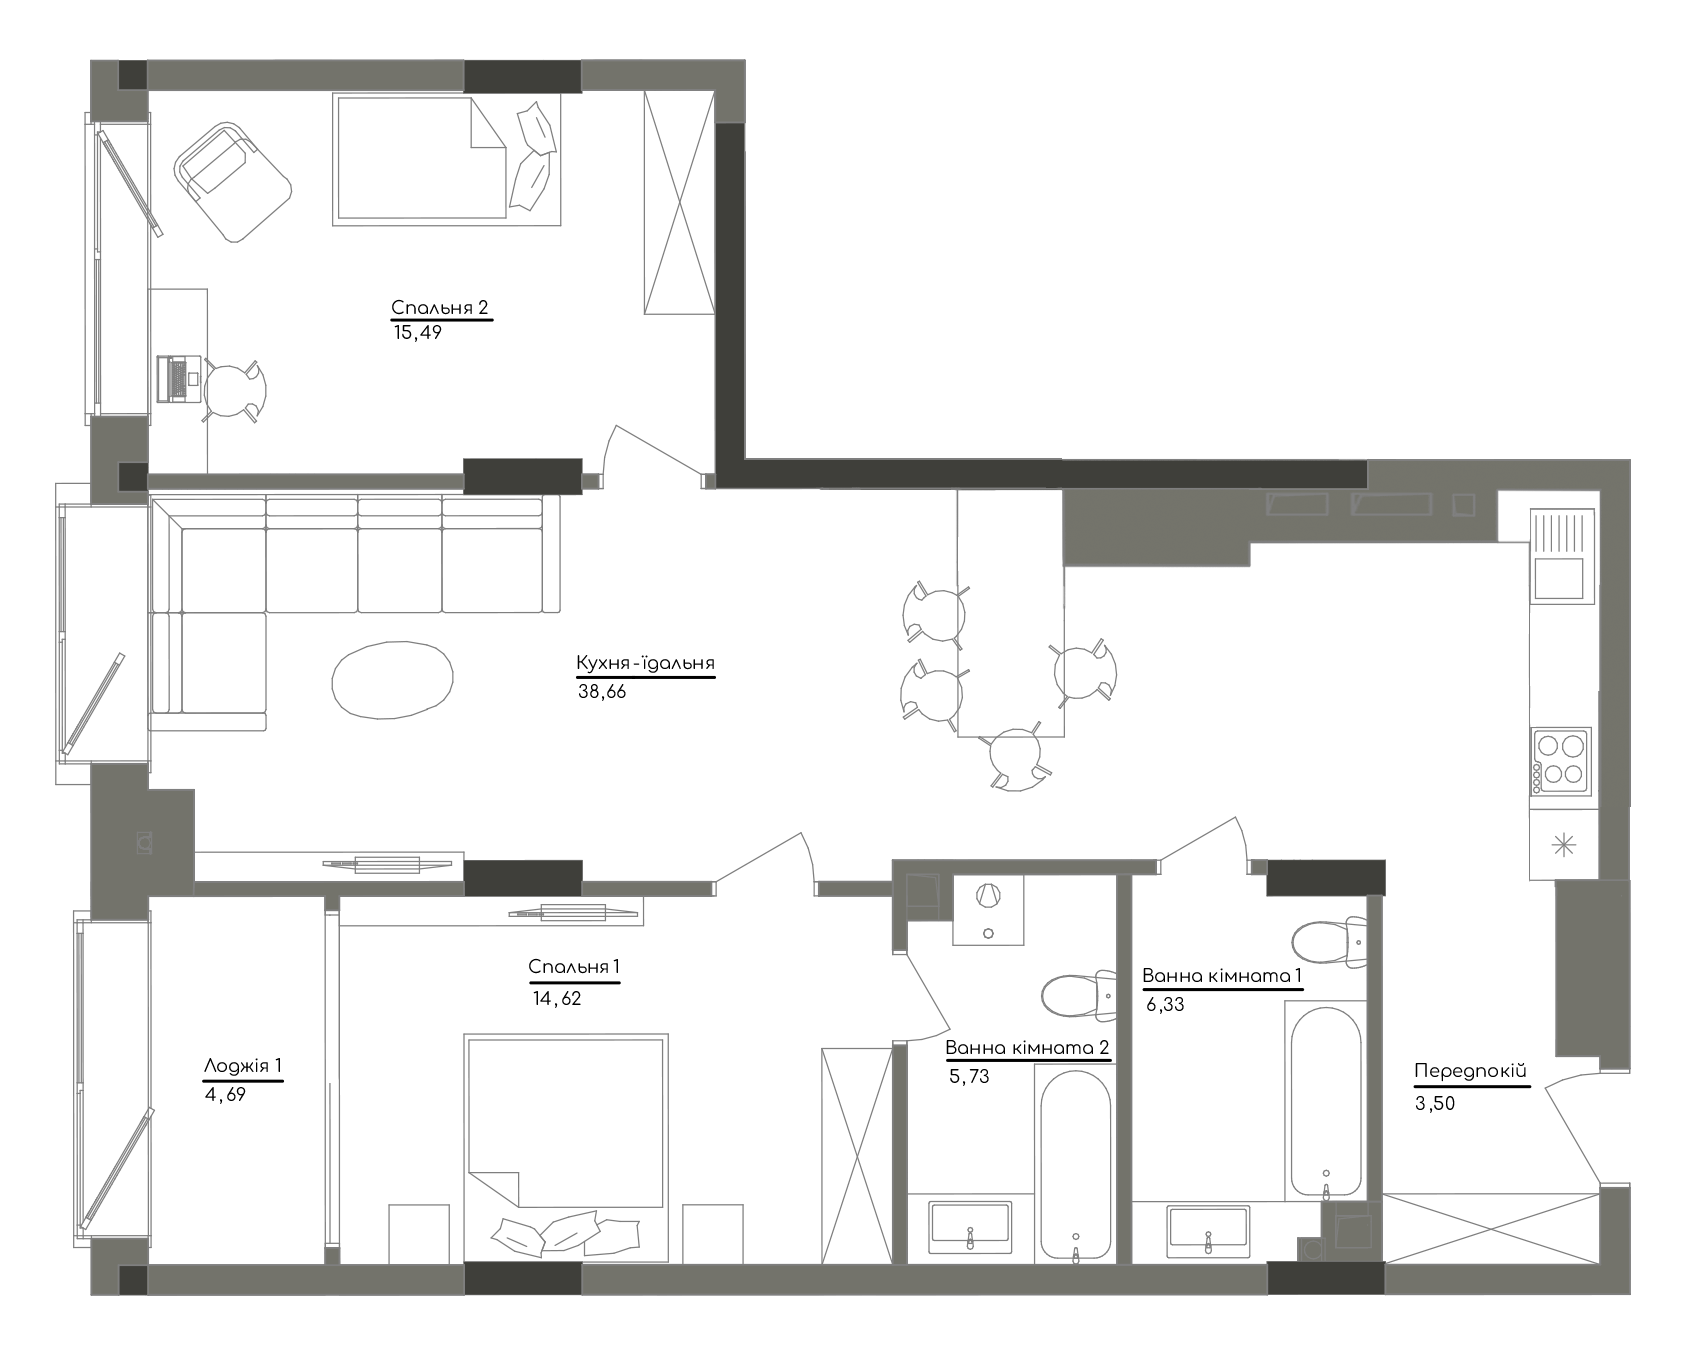 2-кімнатна 89.02 м² в ЖК Washington Concept House від 49 200 грн/м², Київ